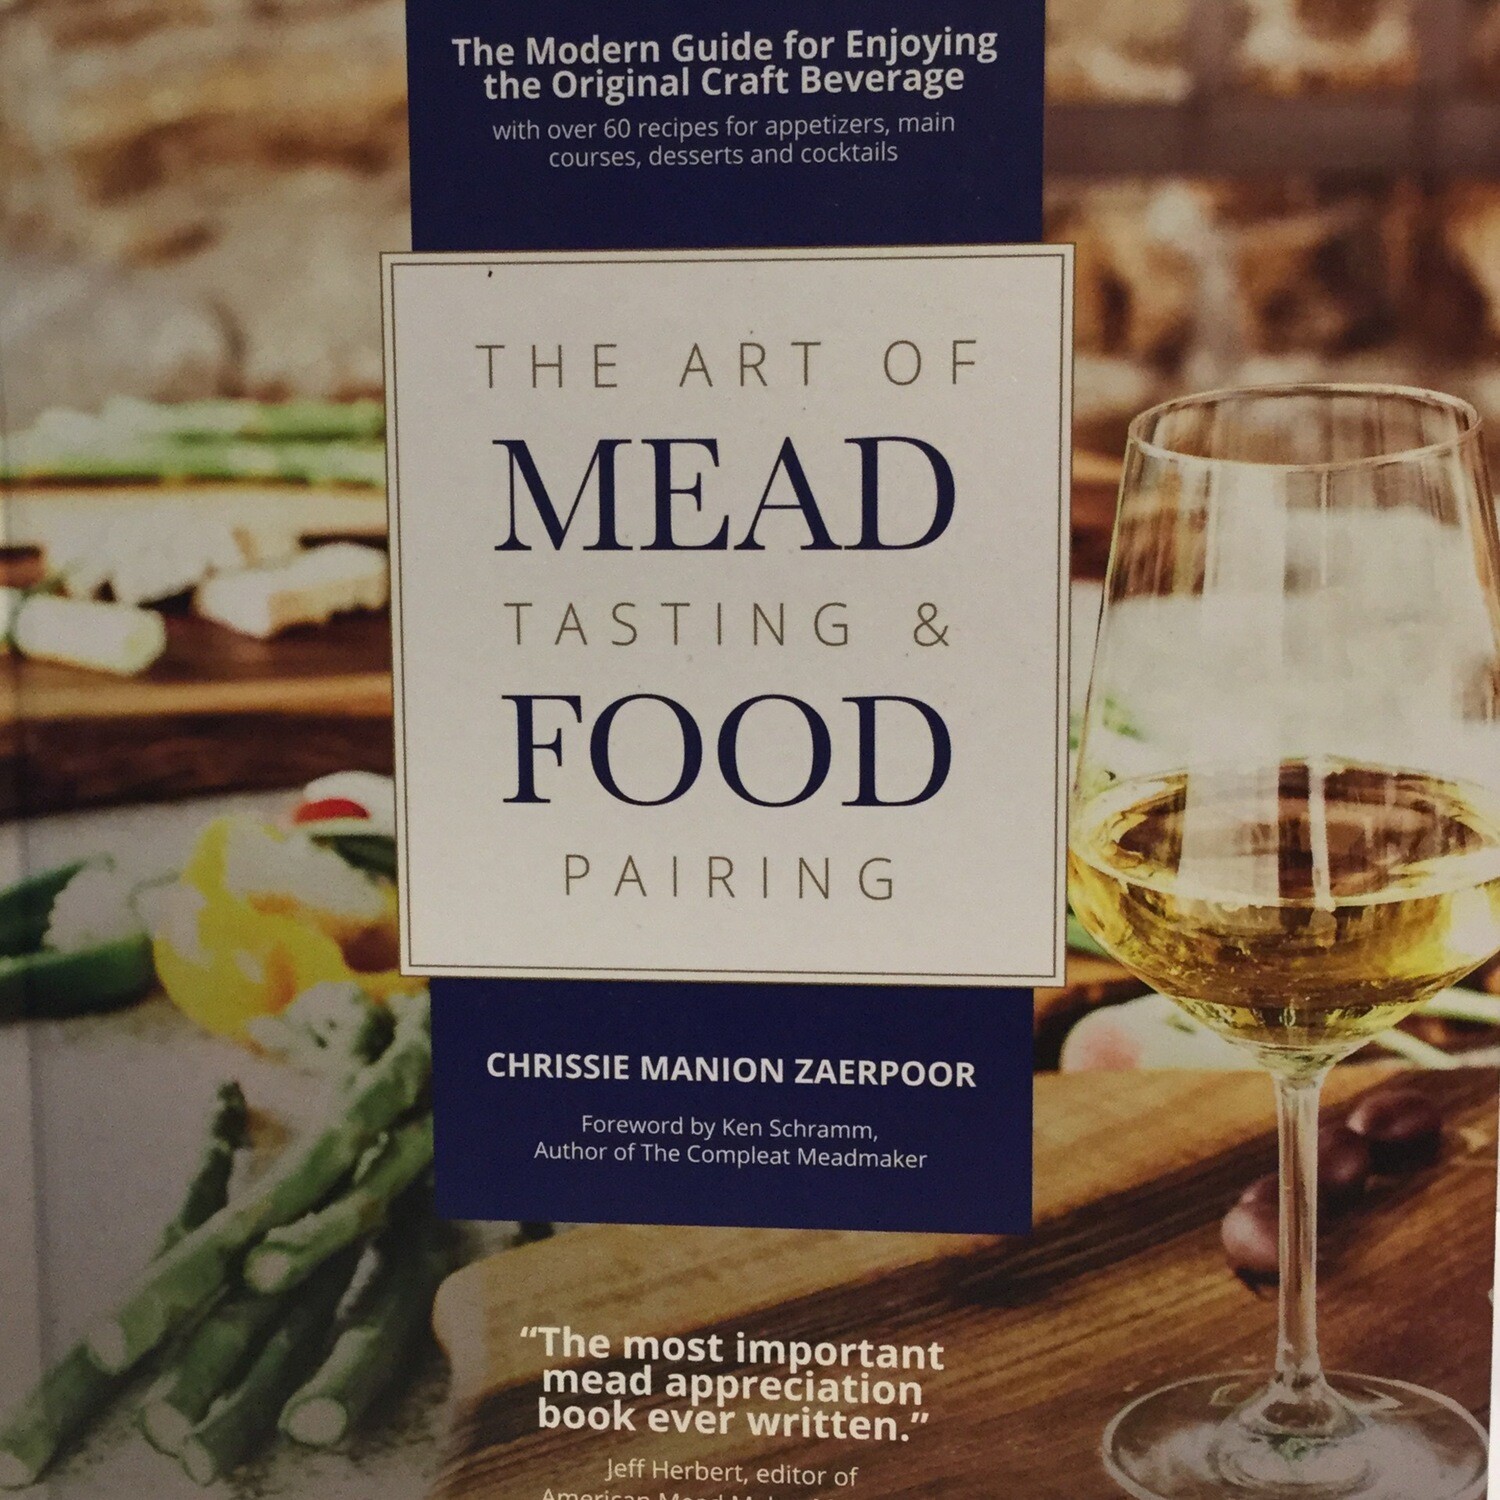 The Art of Mead Tasting & Food Pairing